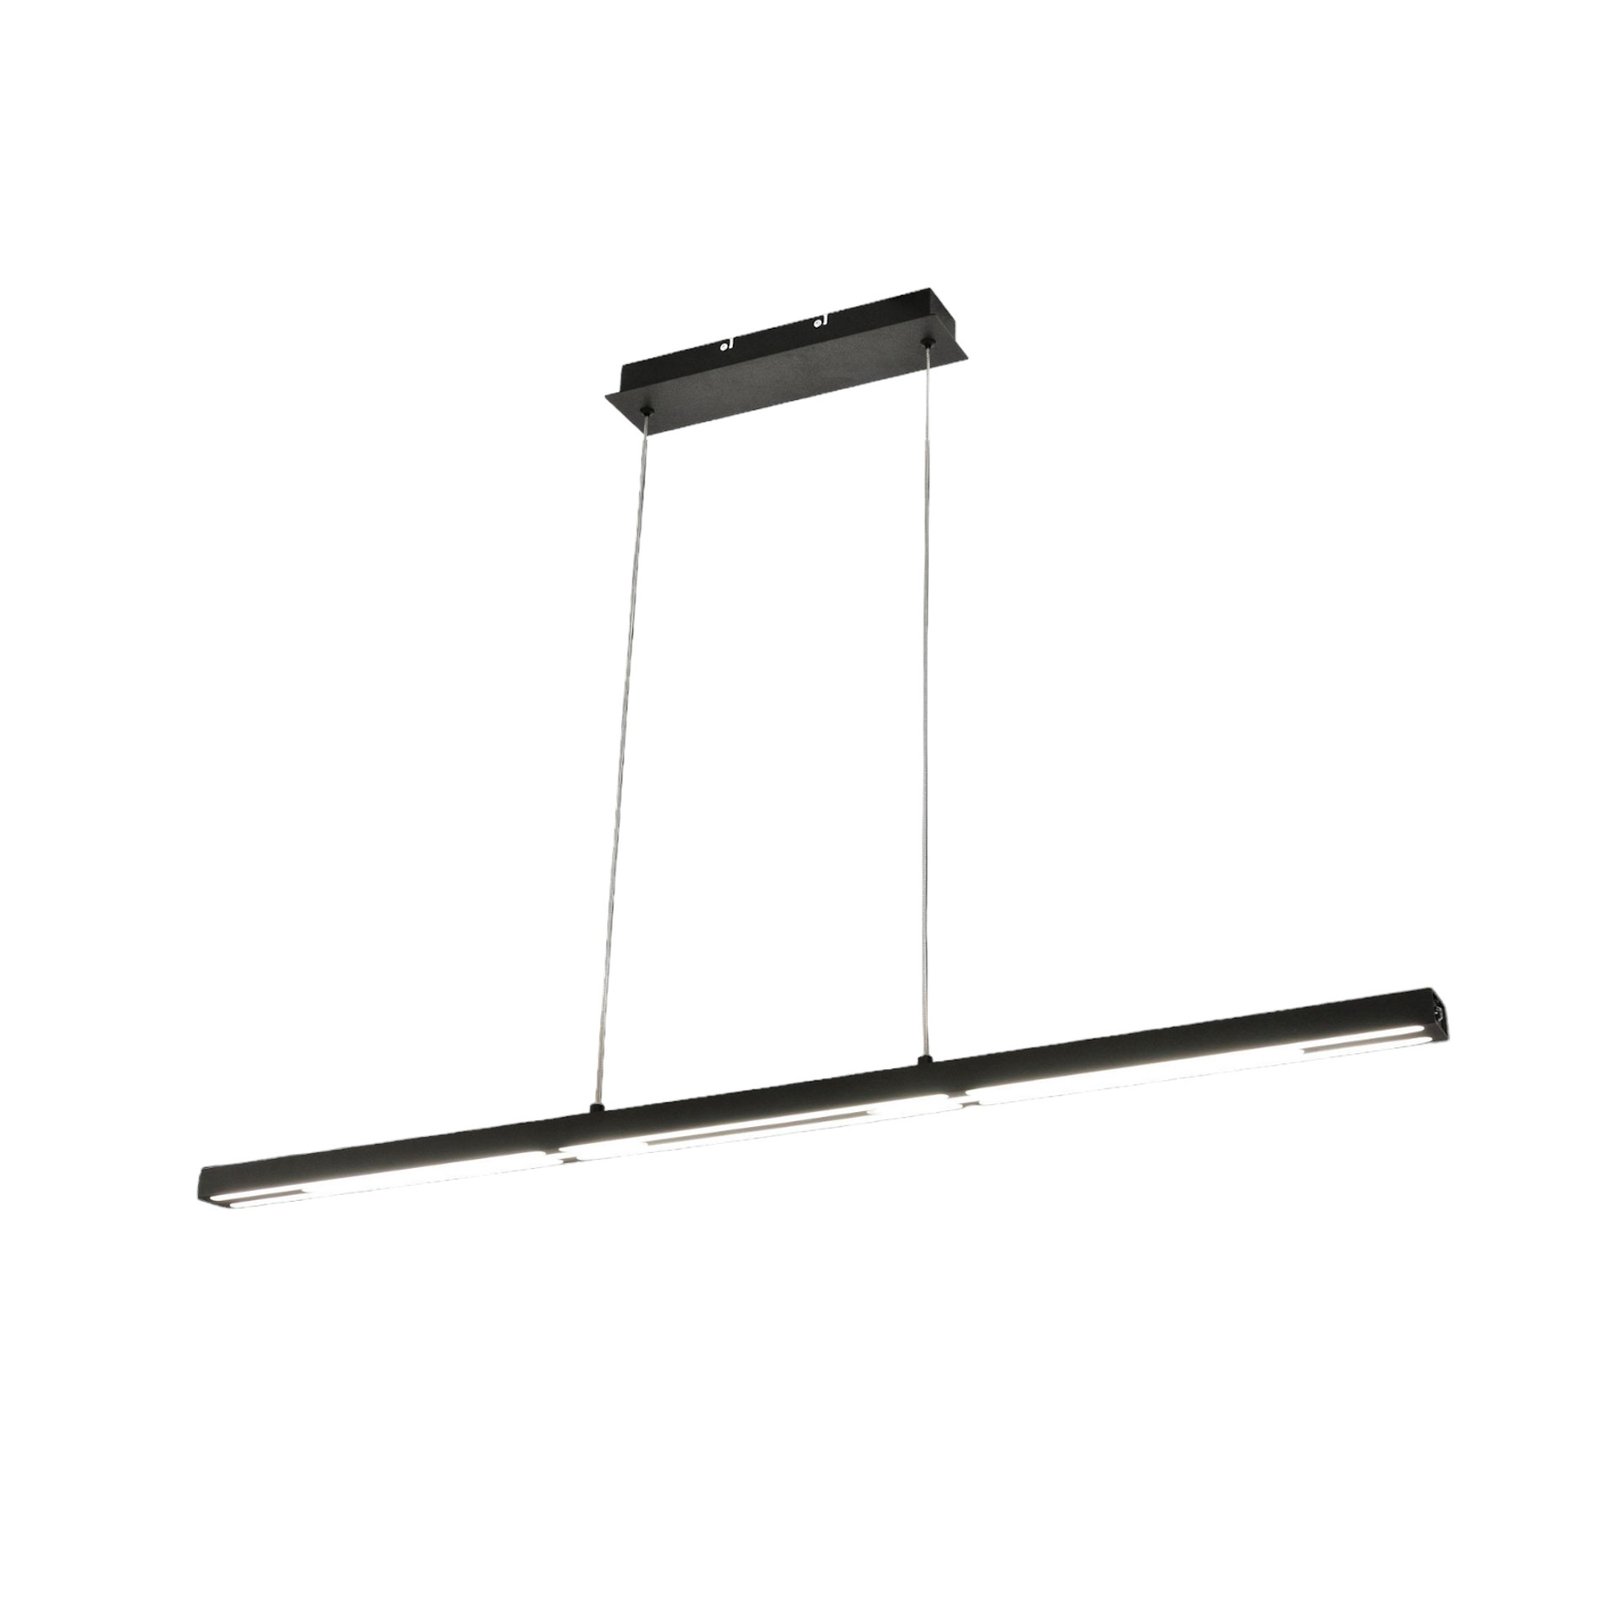 Candeeiro suspenso Ling LED, preto, com luz superior e inferior, regulável